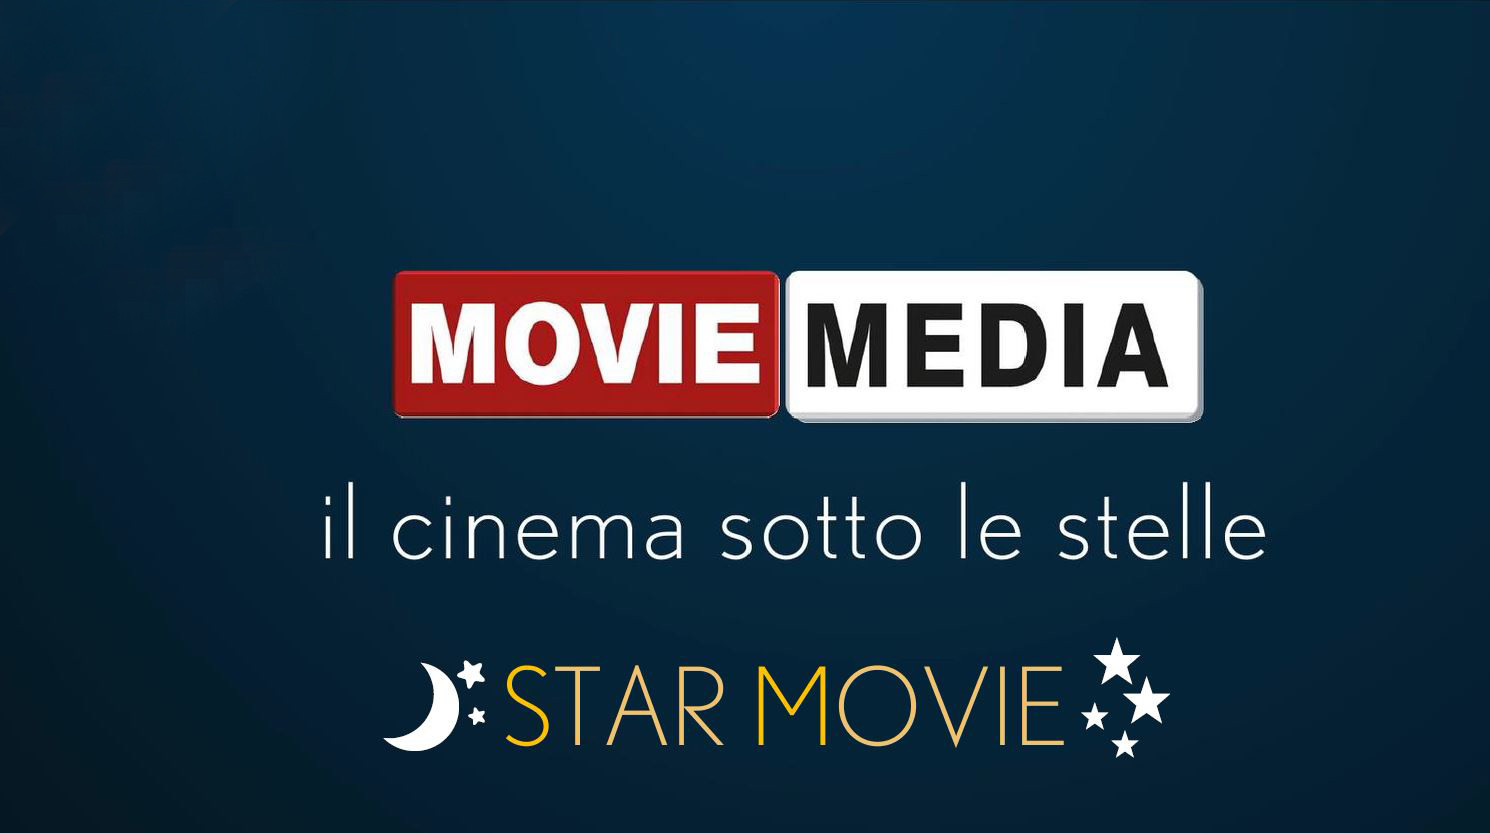 MovieMedia proietta un +20% per la raccolta nel primo semestre, grazie anche alle attività btl e le iniziative speciali